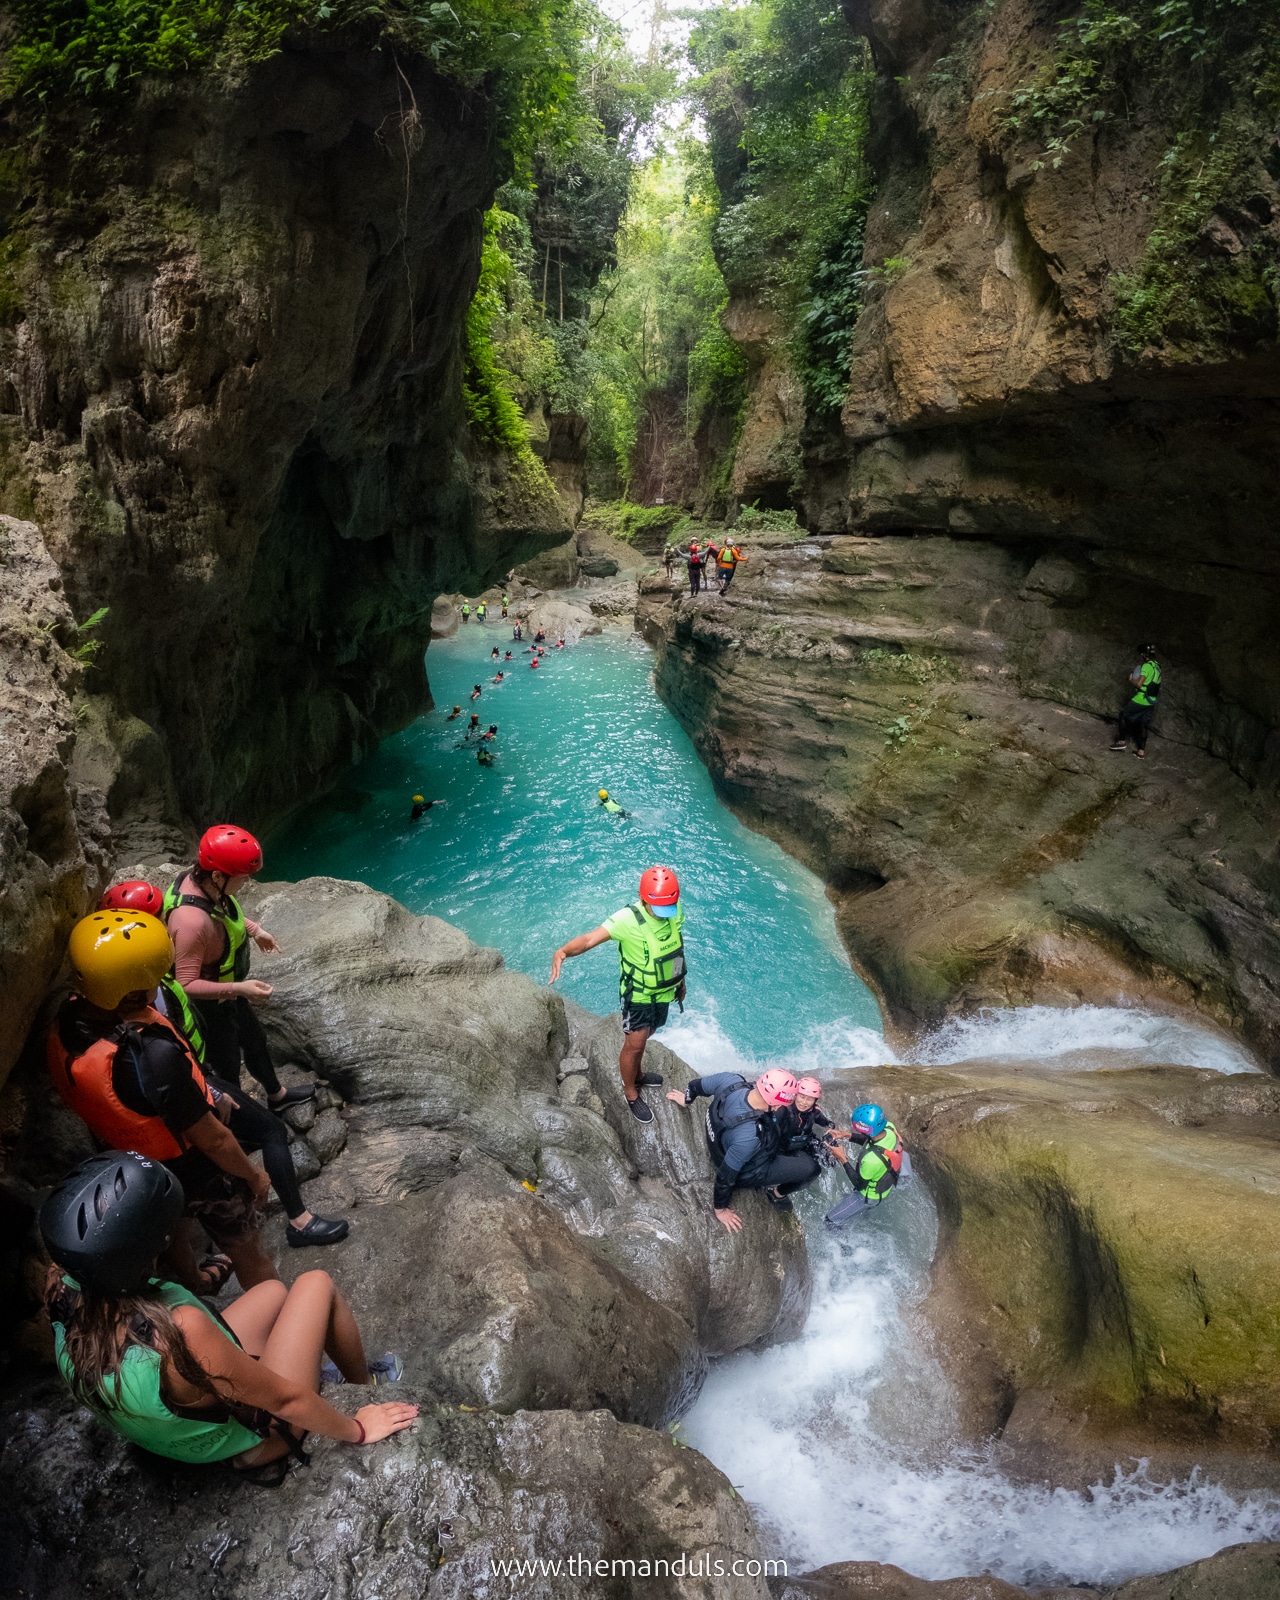 Kawasan Falls, Kawasan Waterfall, Kawasan Canyoneering, Kawasan Falls Cebu Philippines, Cebu travel guide